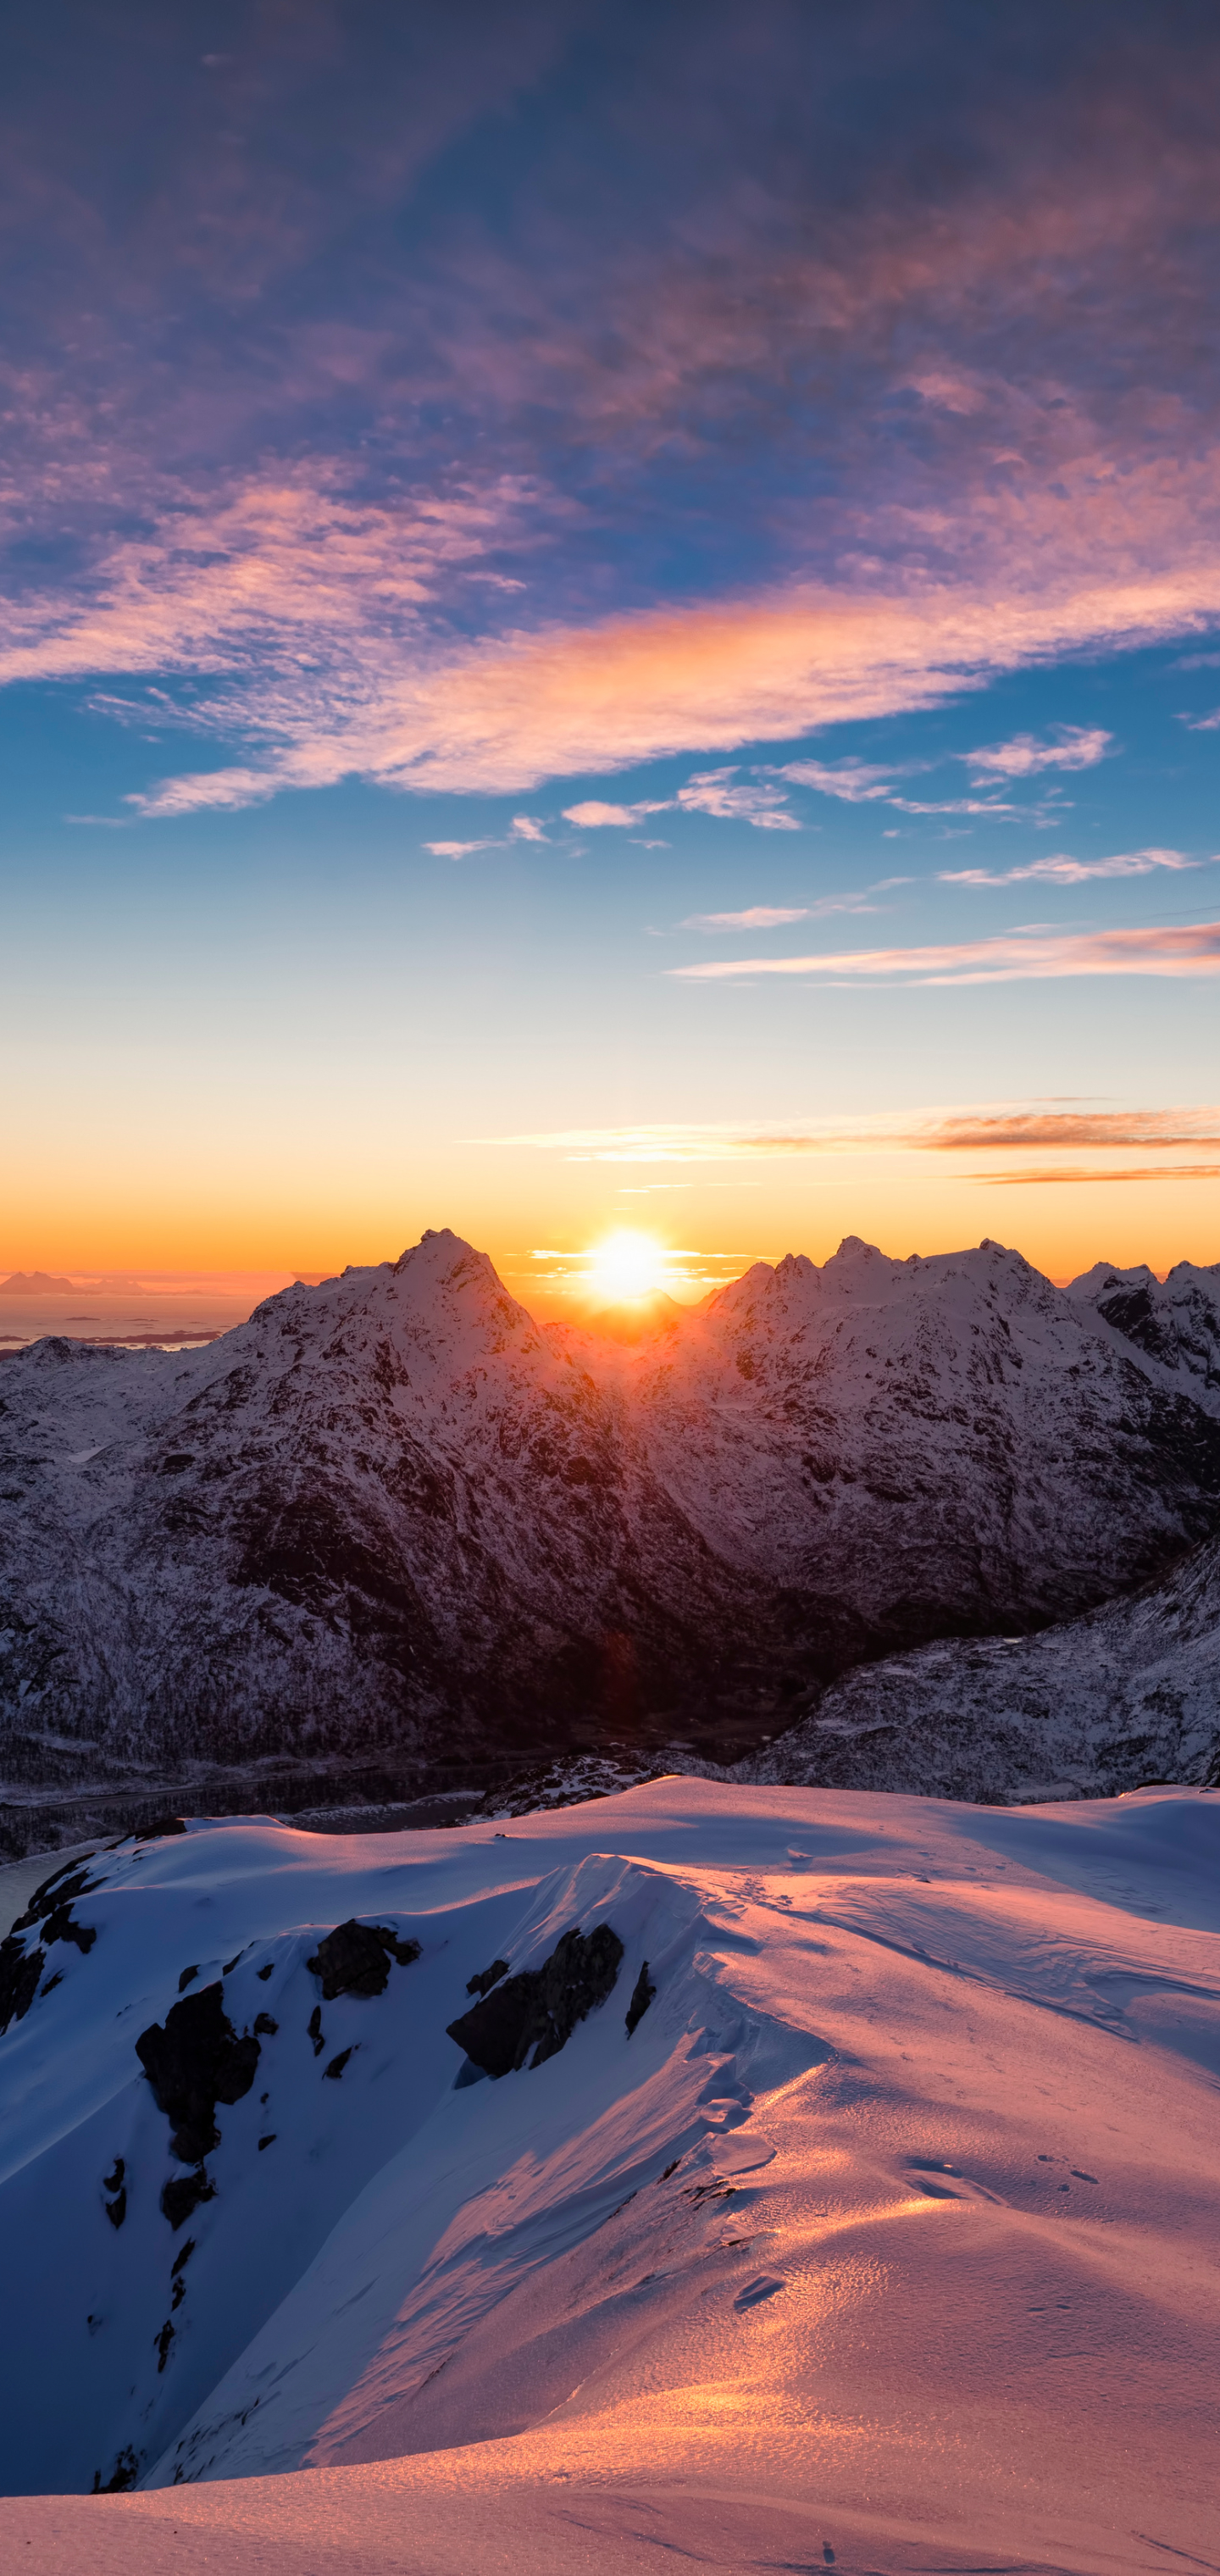 Descarga gratuita de fondo de pantalla para móvil de Paisaje, Naturaleza, Nieve, Amanecer, Montaña, Noruega, Tierra/naturaleza.